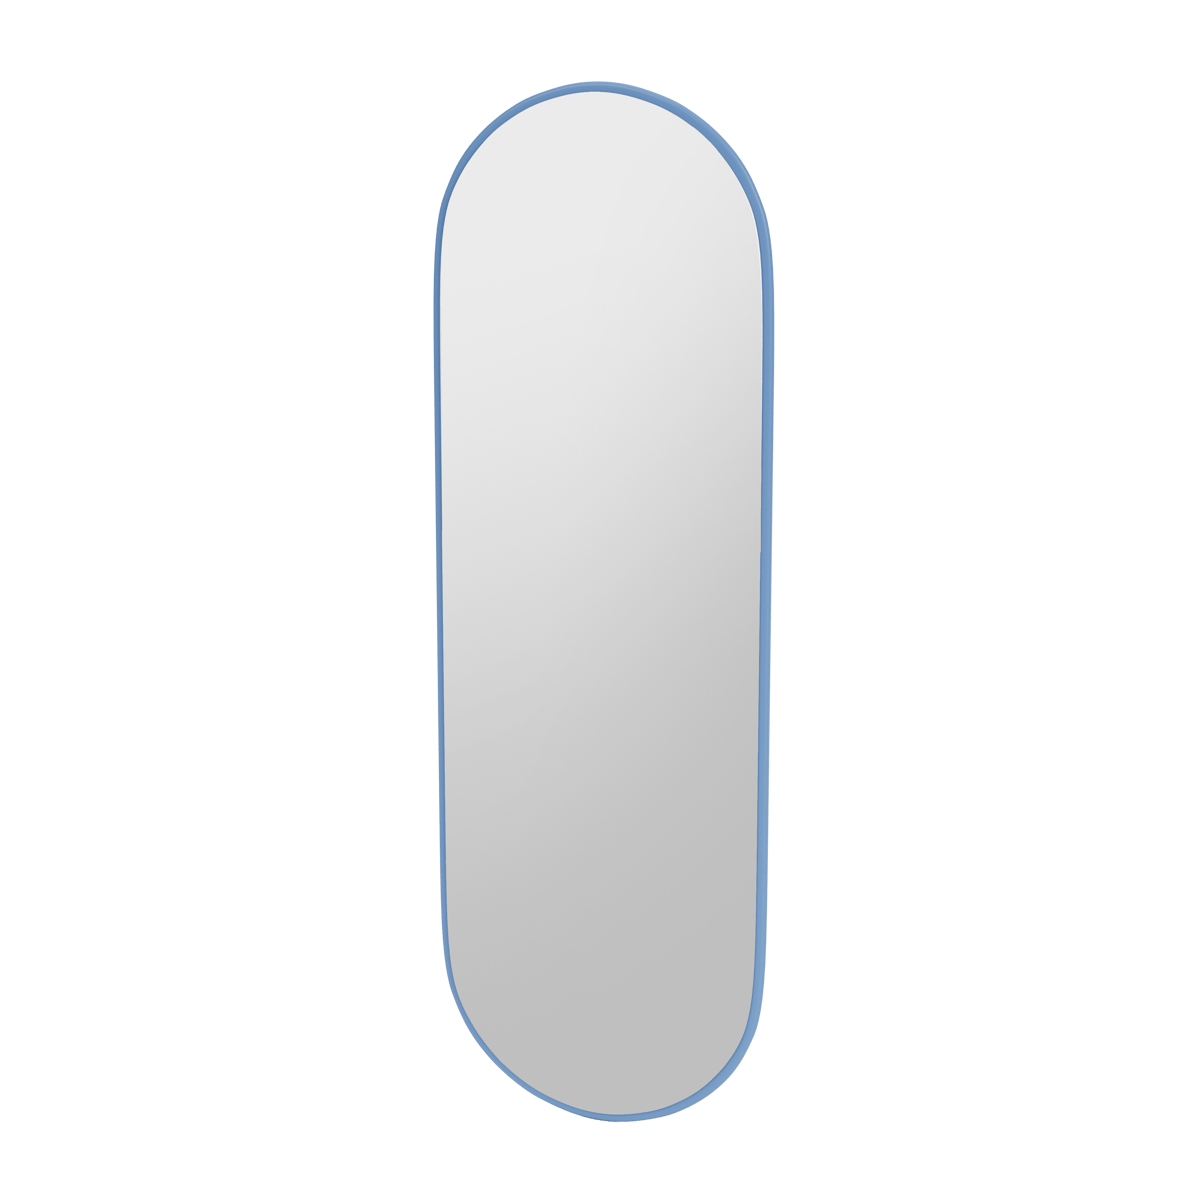 Montana FIGUUR Mirror Spiegel - SP824R Azure